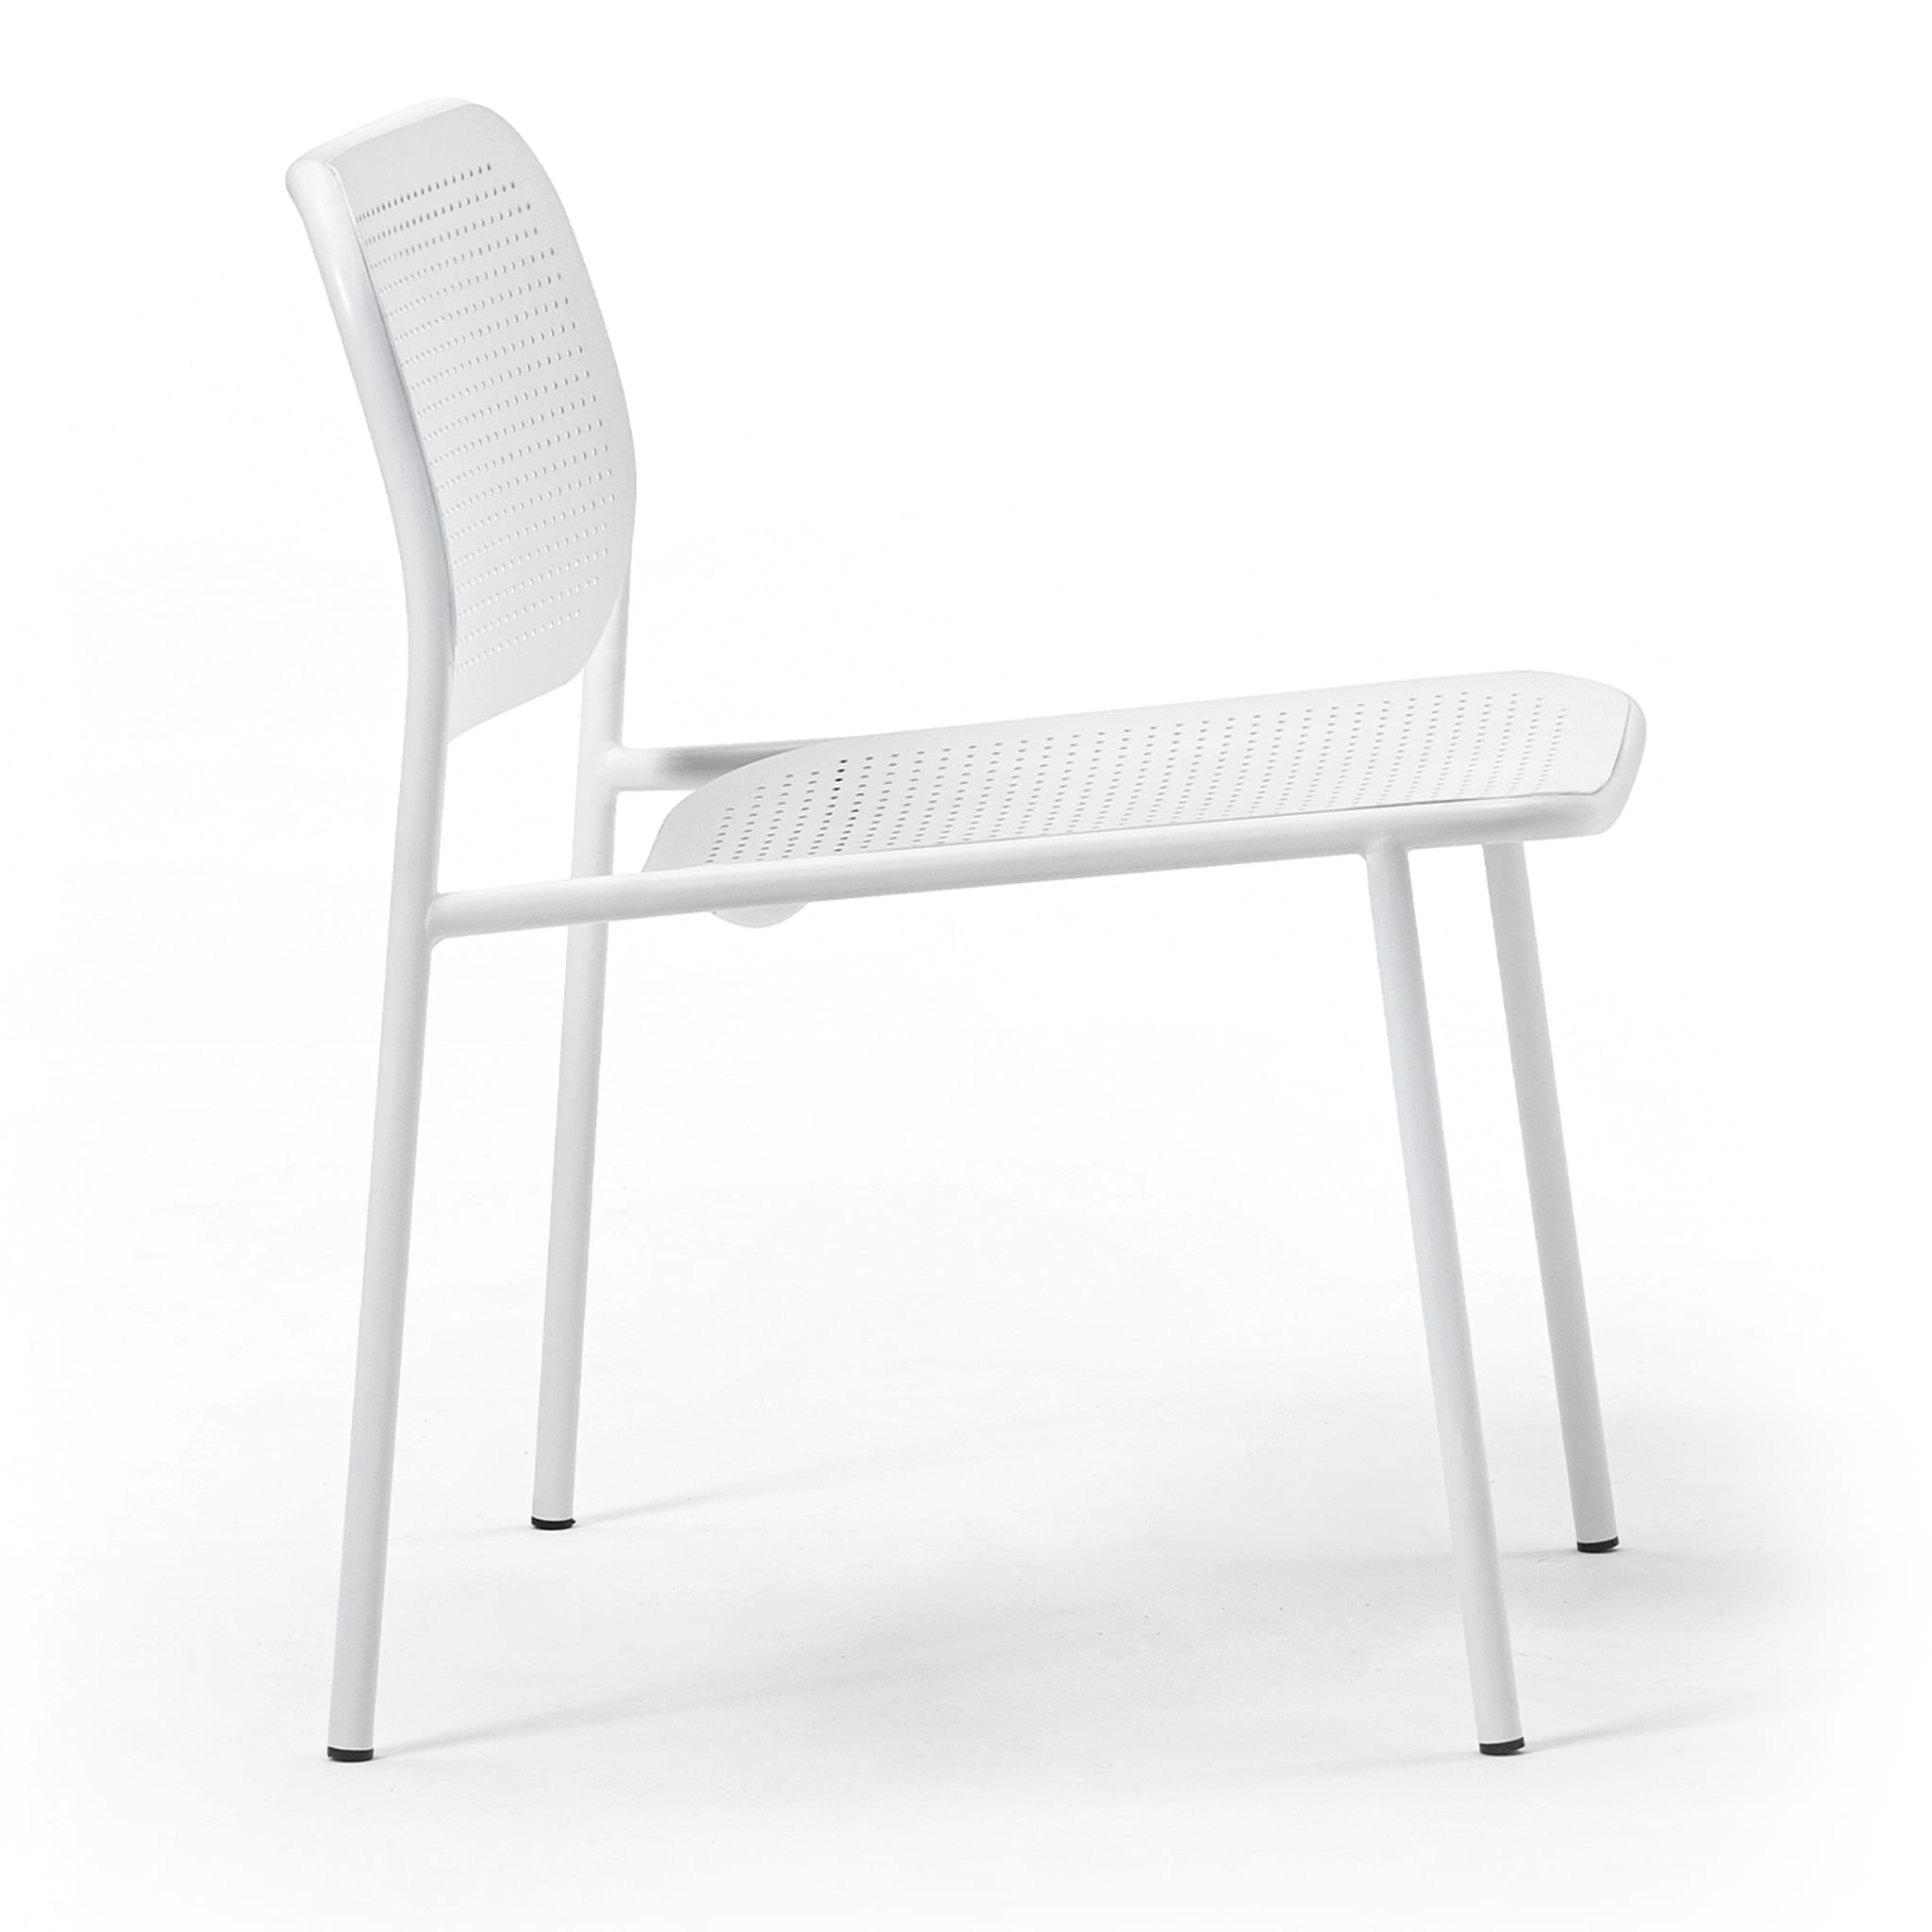 0172-CB Metis Dot White Chair By Studio Gabbertas - Alternative view 1